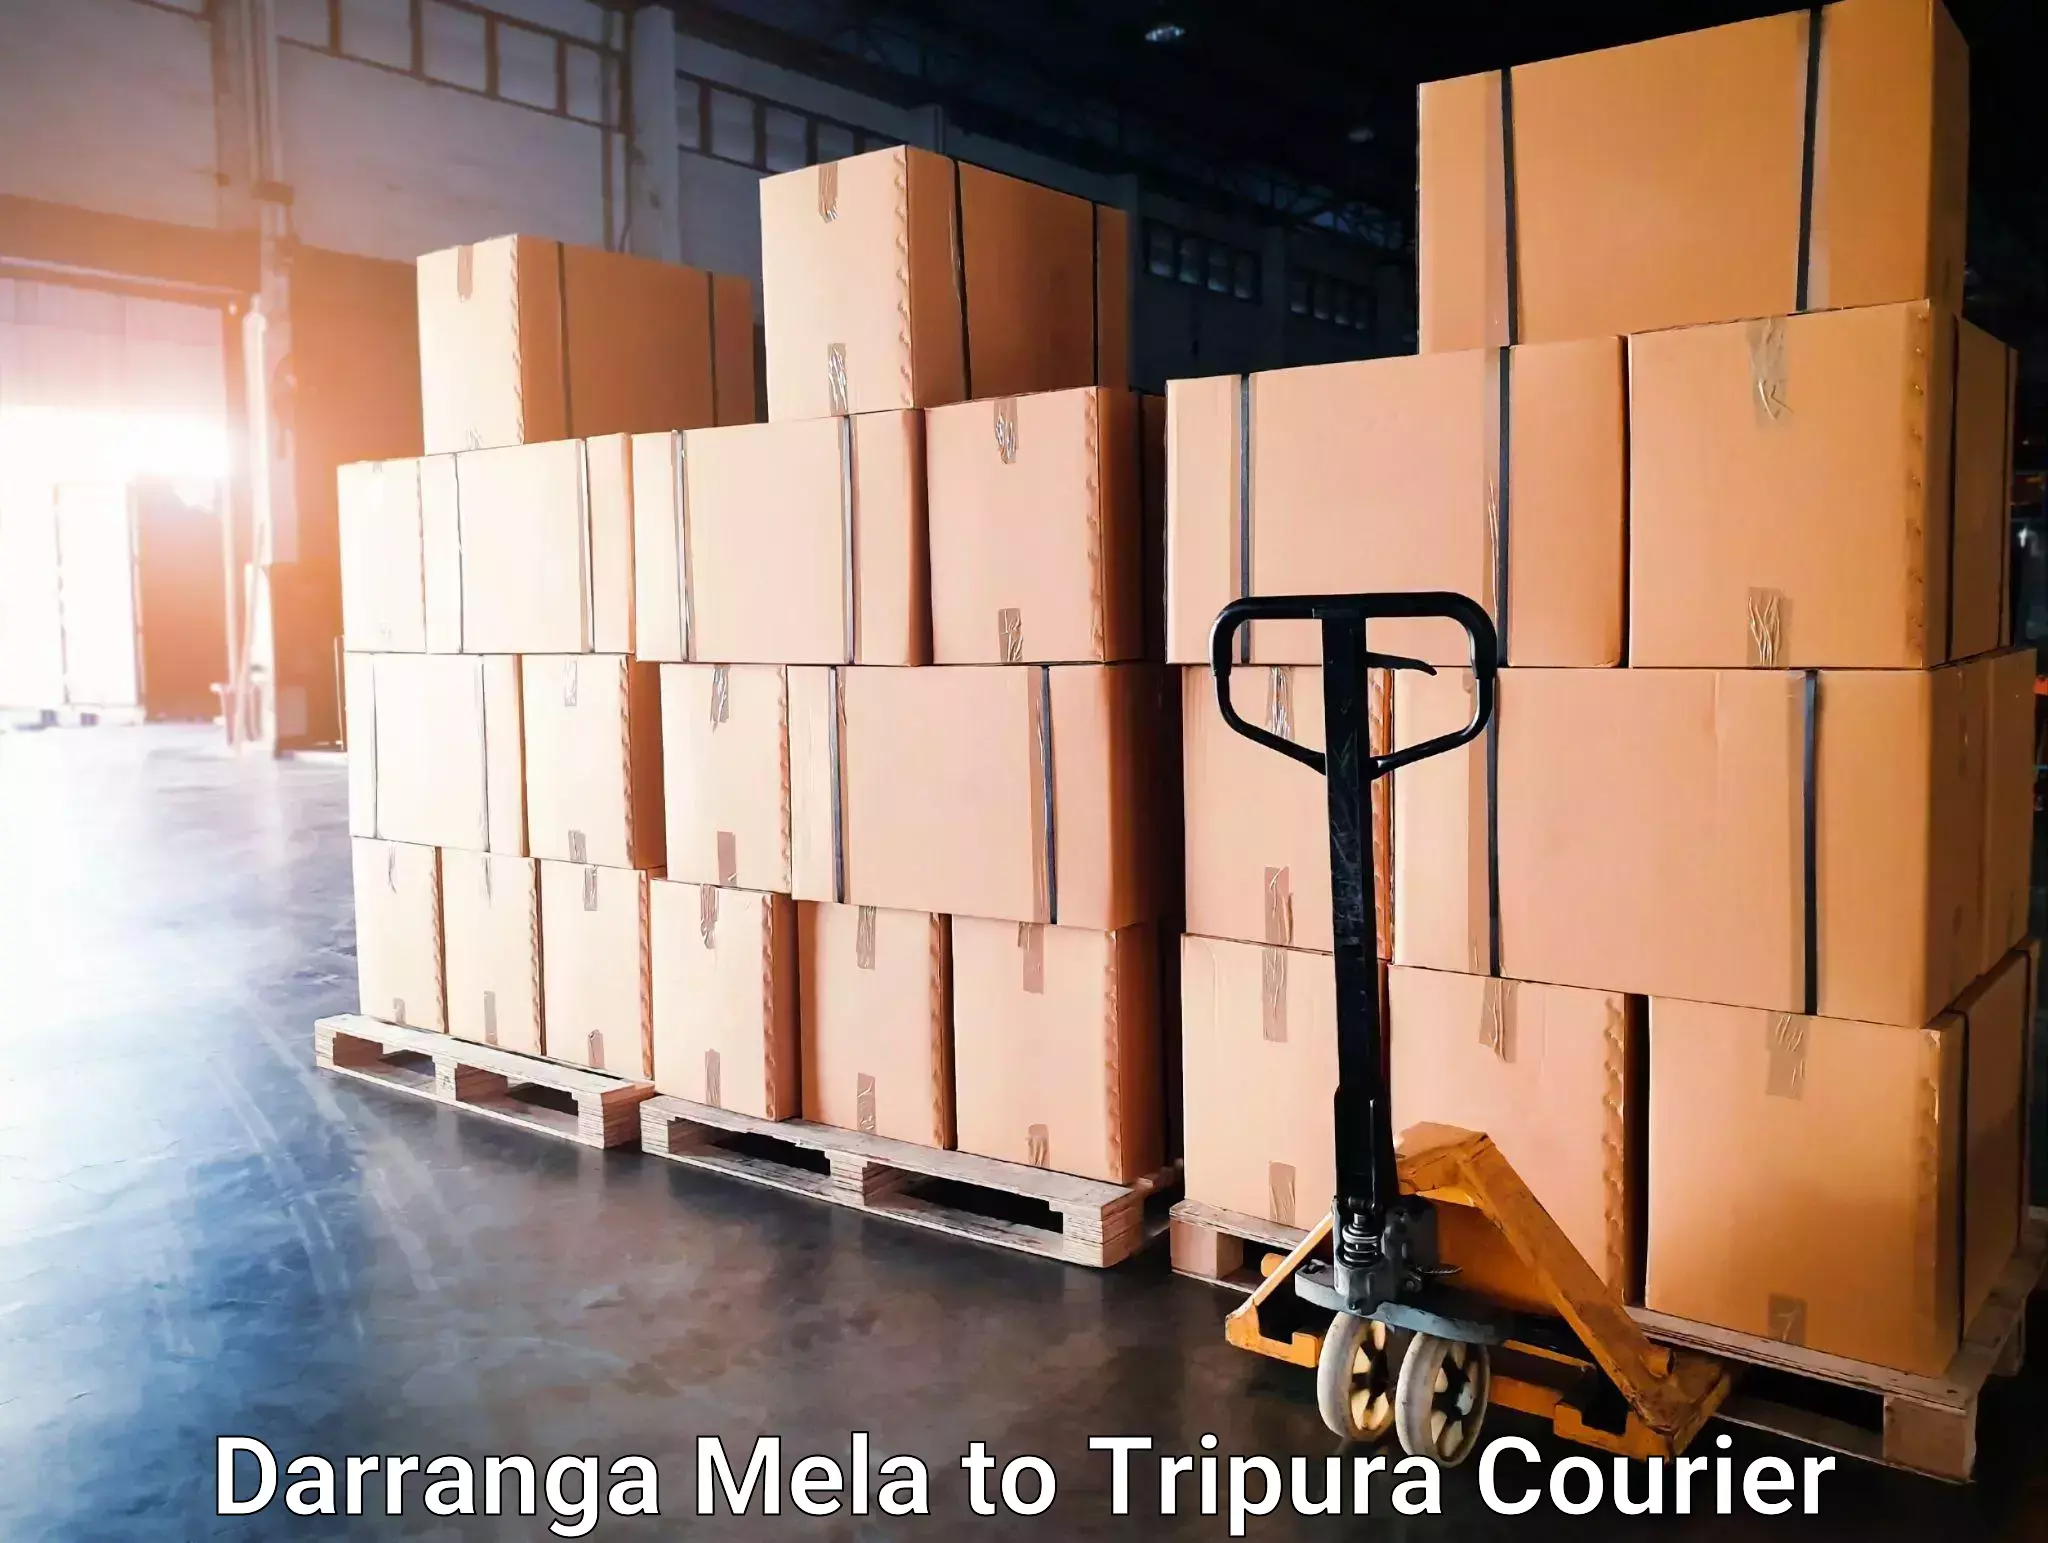 24-hour courier services Darranga Mela to Dharmanagar